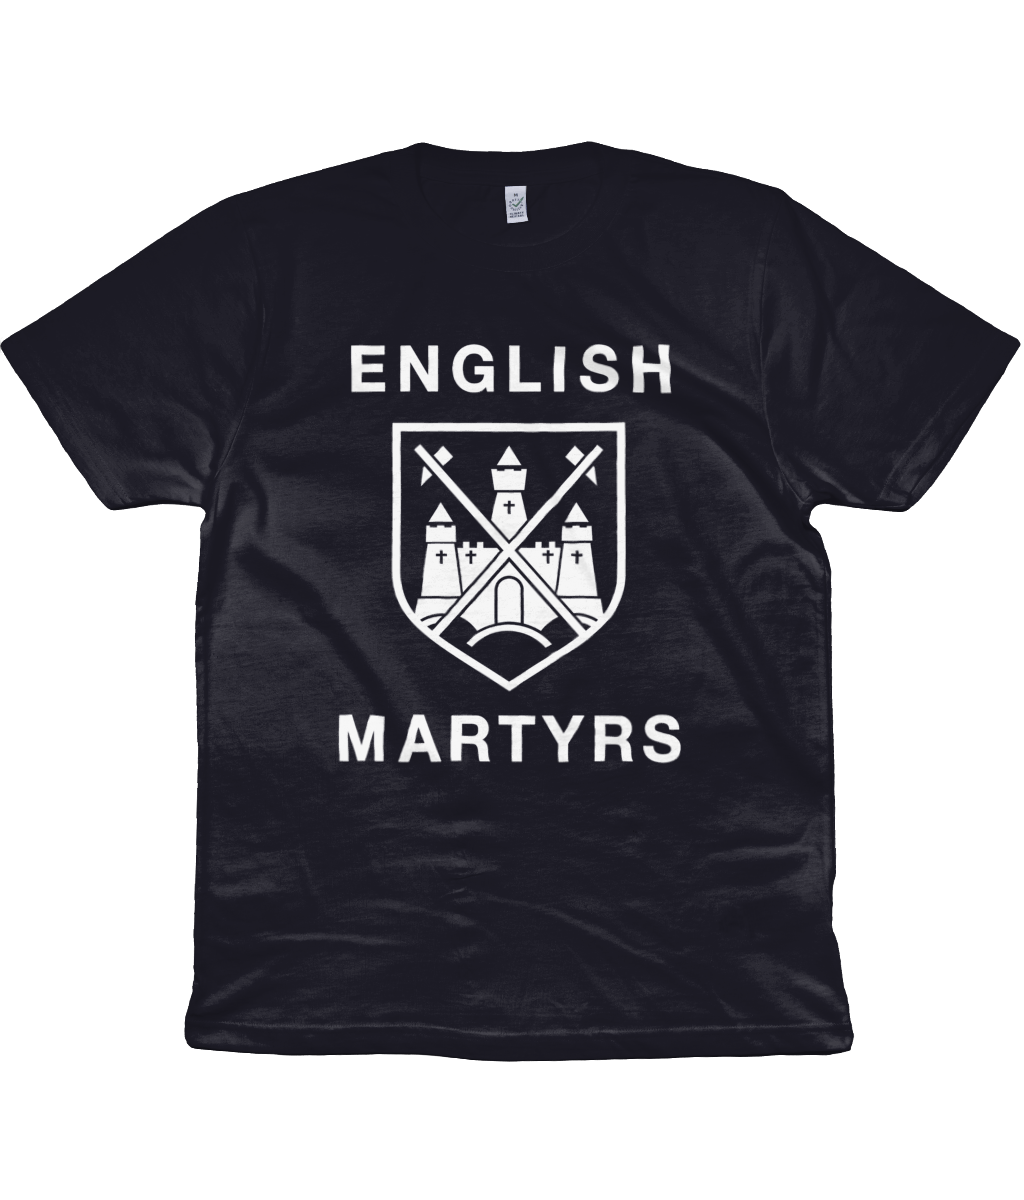 ENGLISH MARTYRS - 1999